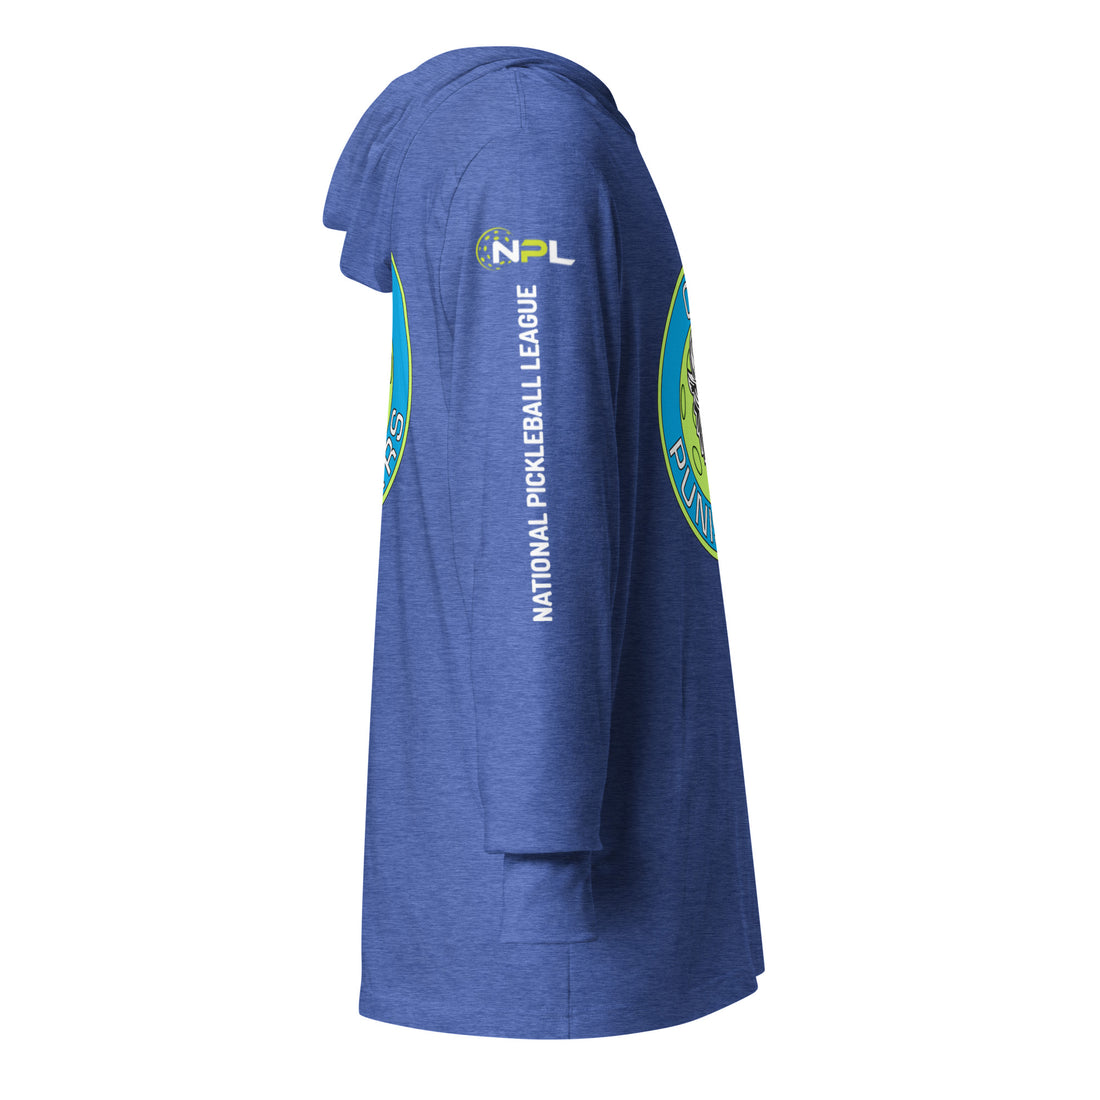 OKC Punishers™ NPL™ Hooded Long Sleeve Unisex T-Shirt!